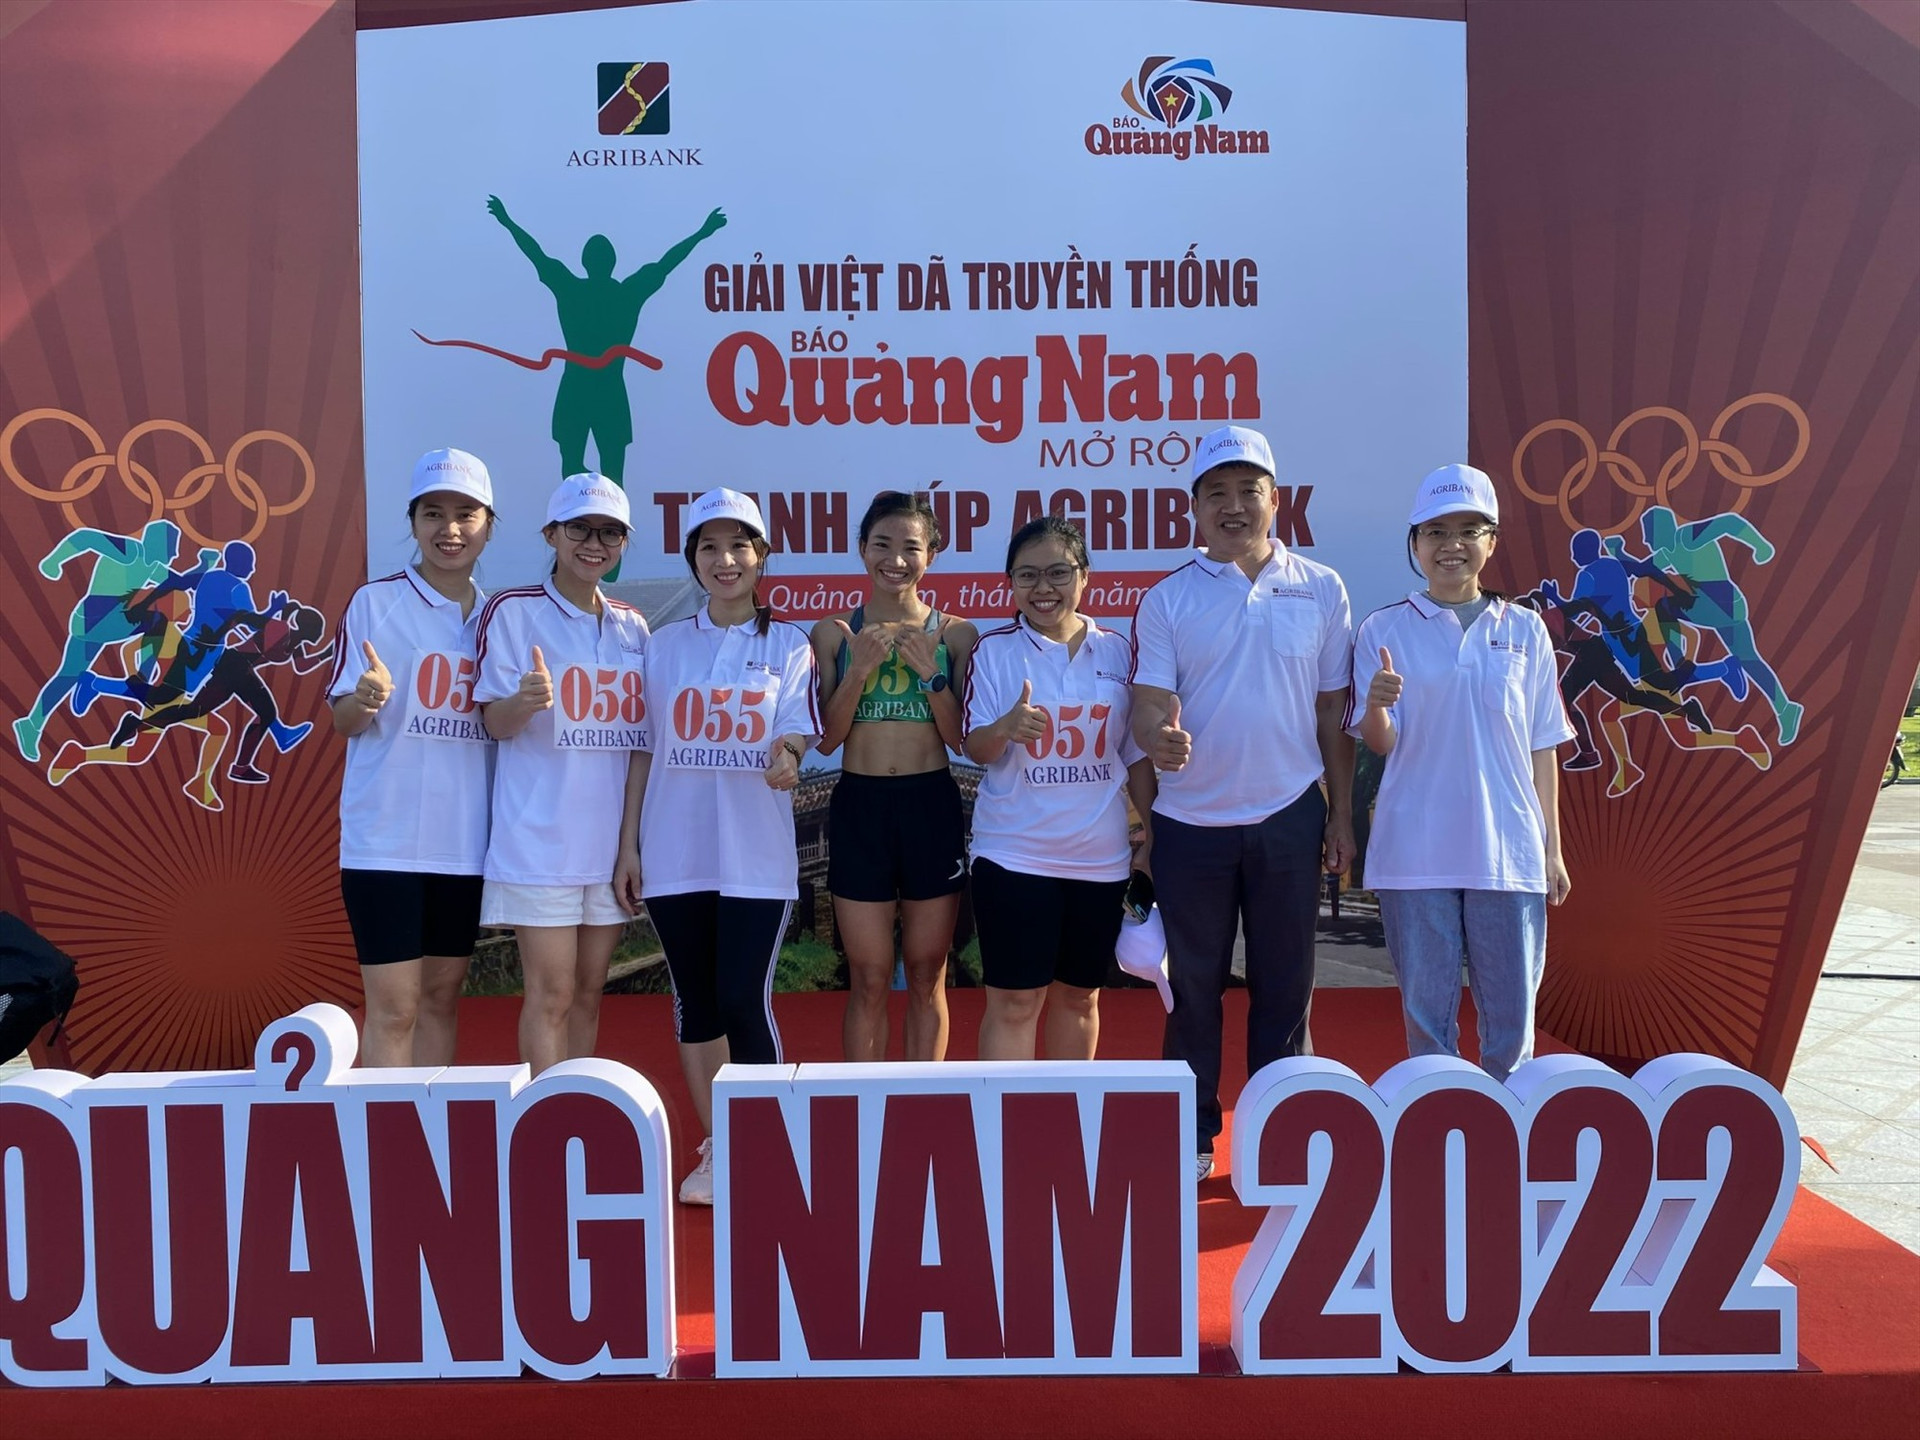 VĐV Nguyễn Thị Oanh (giữa) vô địch 5.000m chụp ảnh cùng các VĐV sau khi về nhất cự li 5.000 mét nữ.